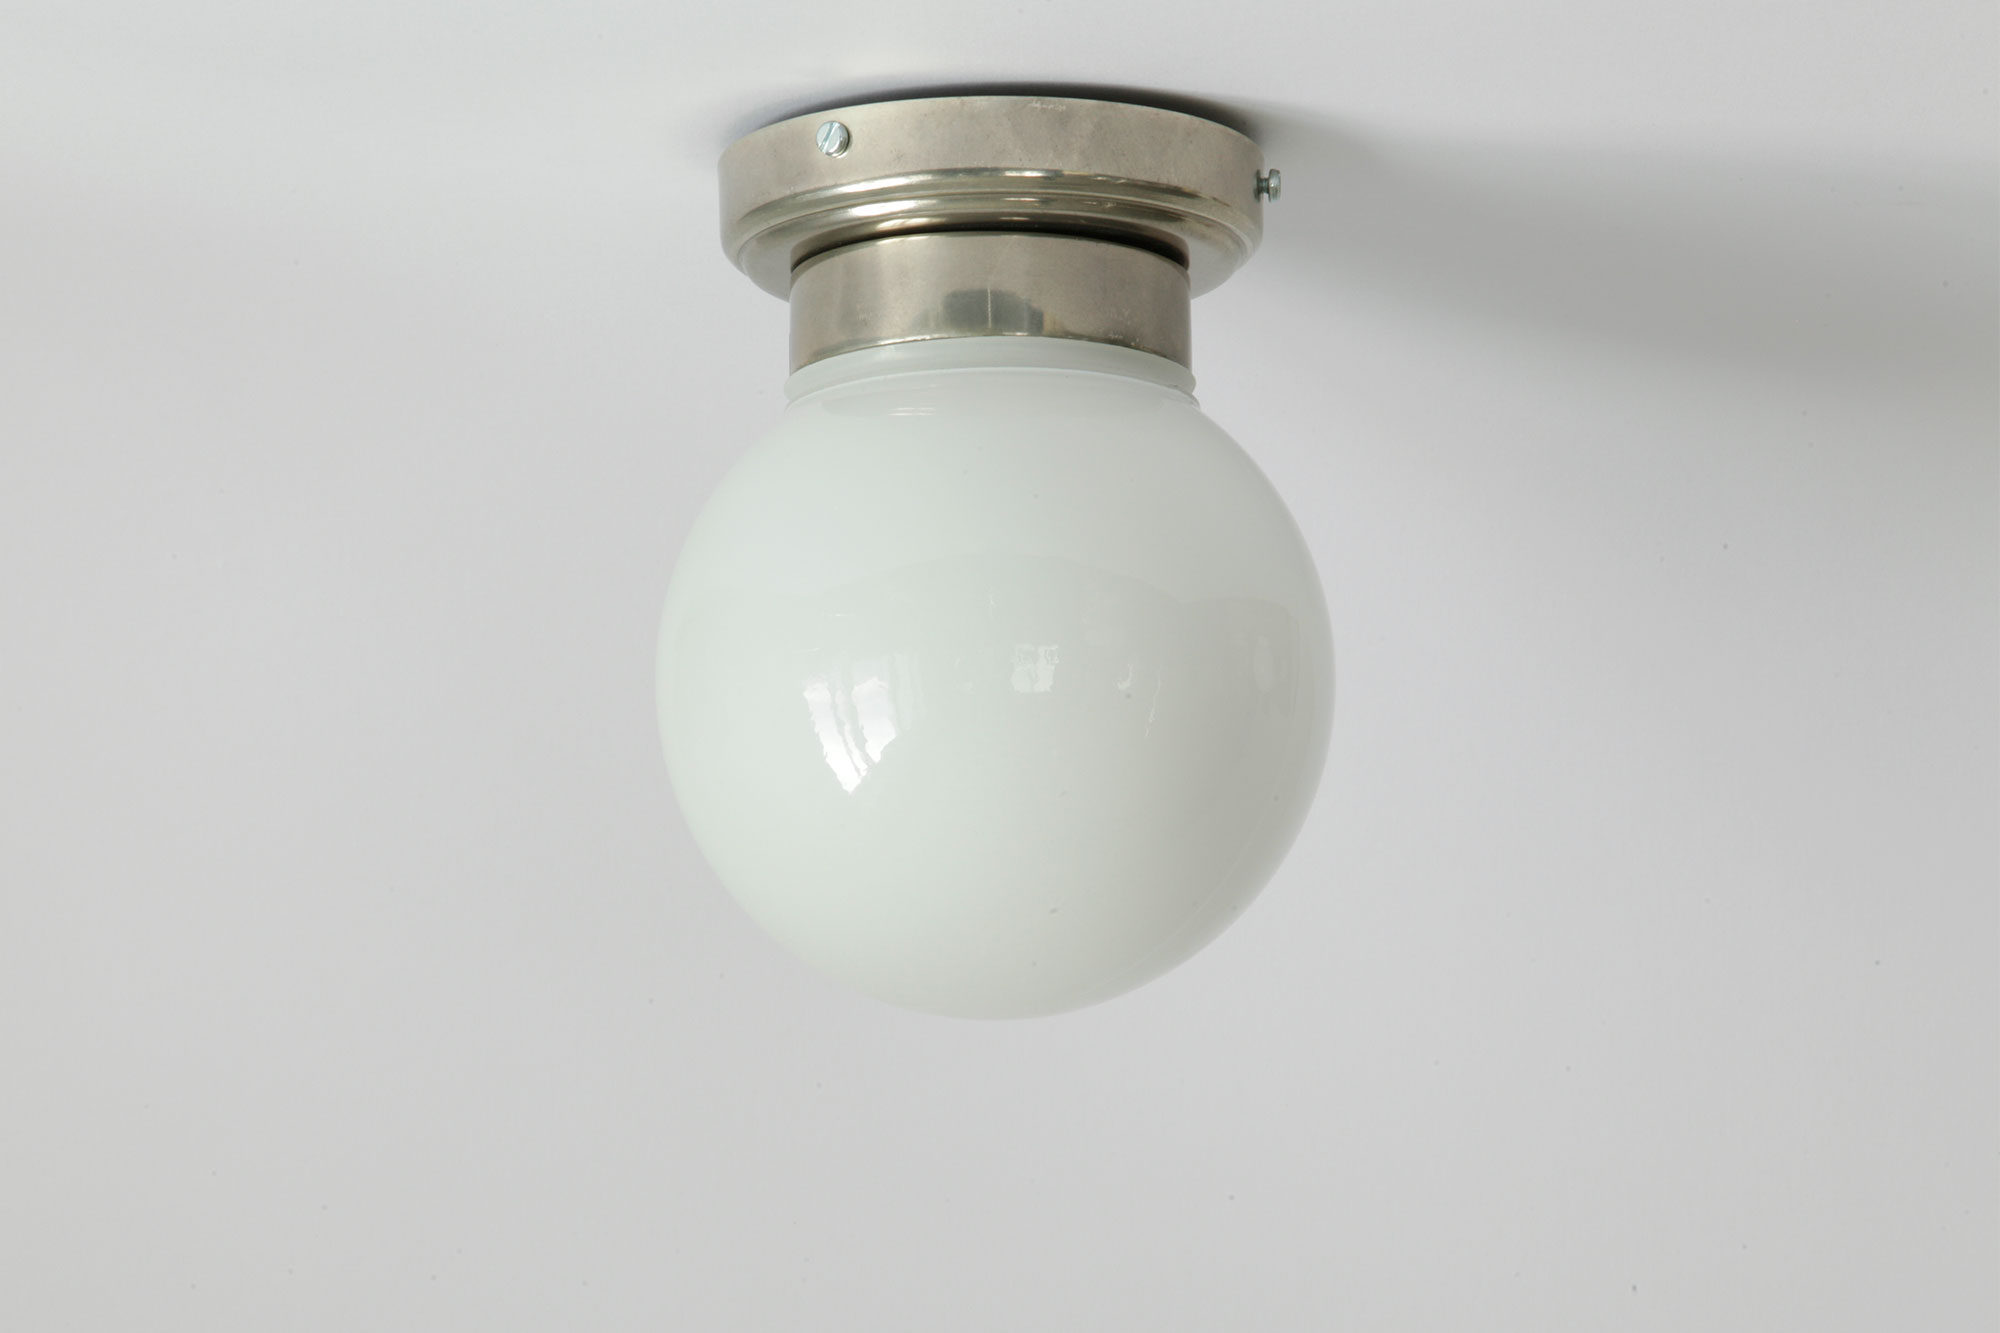 Moderne, kleine Kugel-Deckenleuchte (Opal-Glas), mit IP65 auch für Bäder: Bad-Kugellampe mit Opalglas-Schirm, hier in Messing alt-silbern (patiniert)